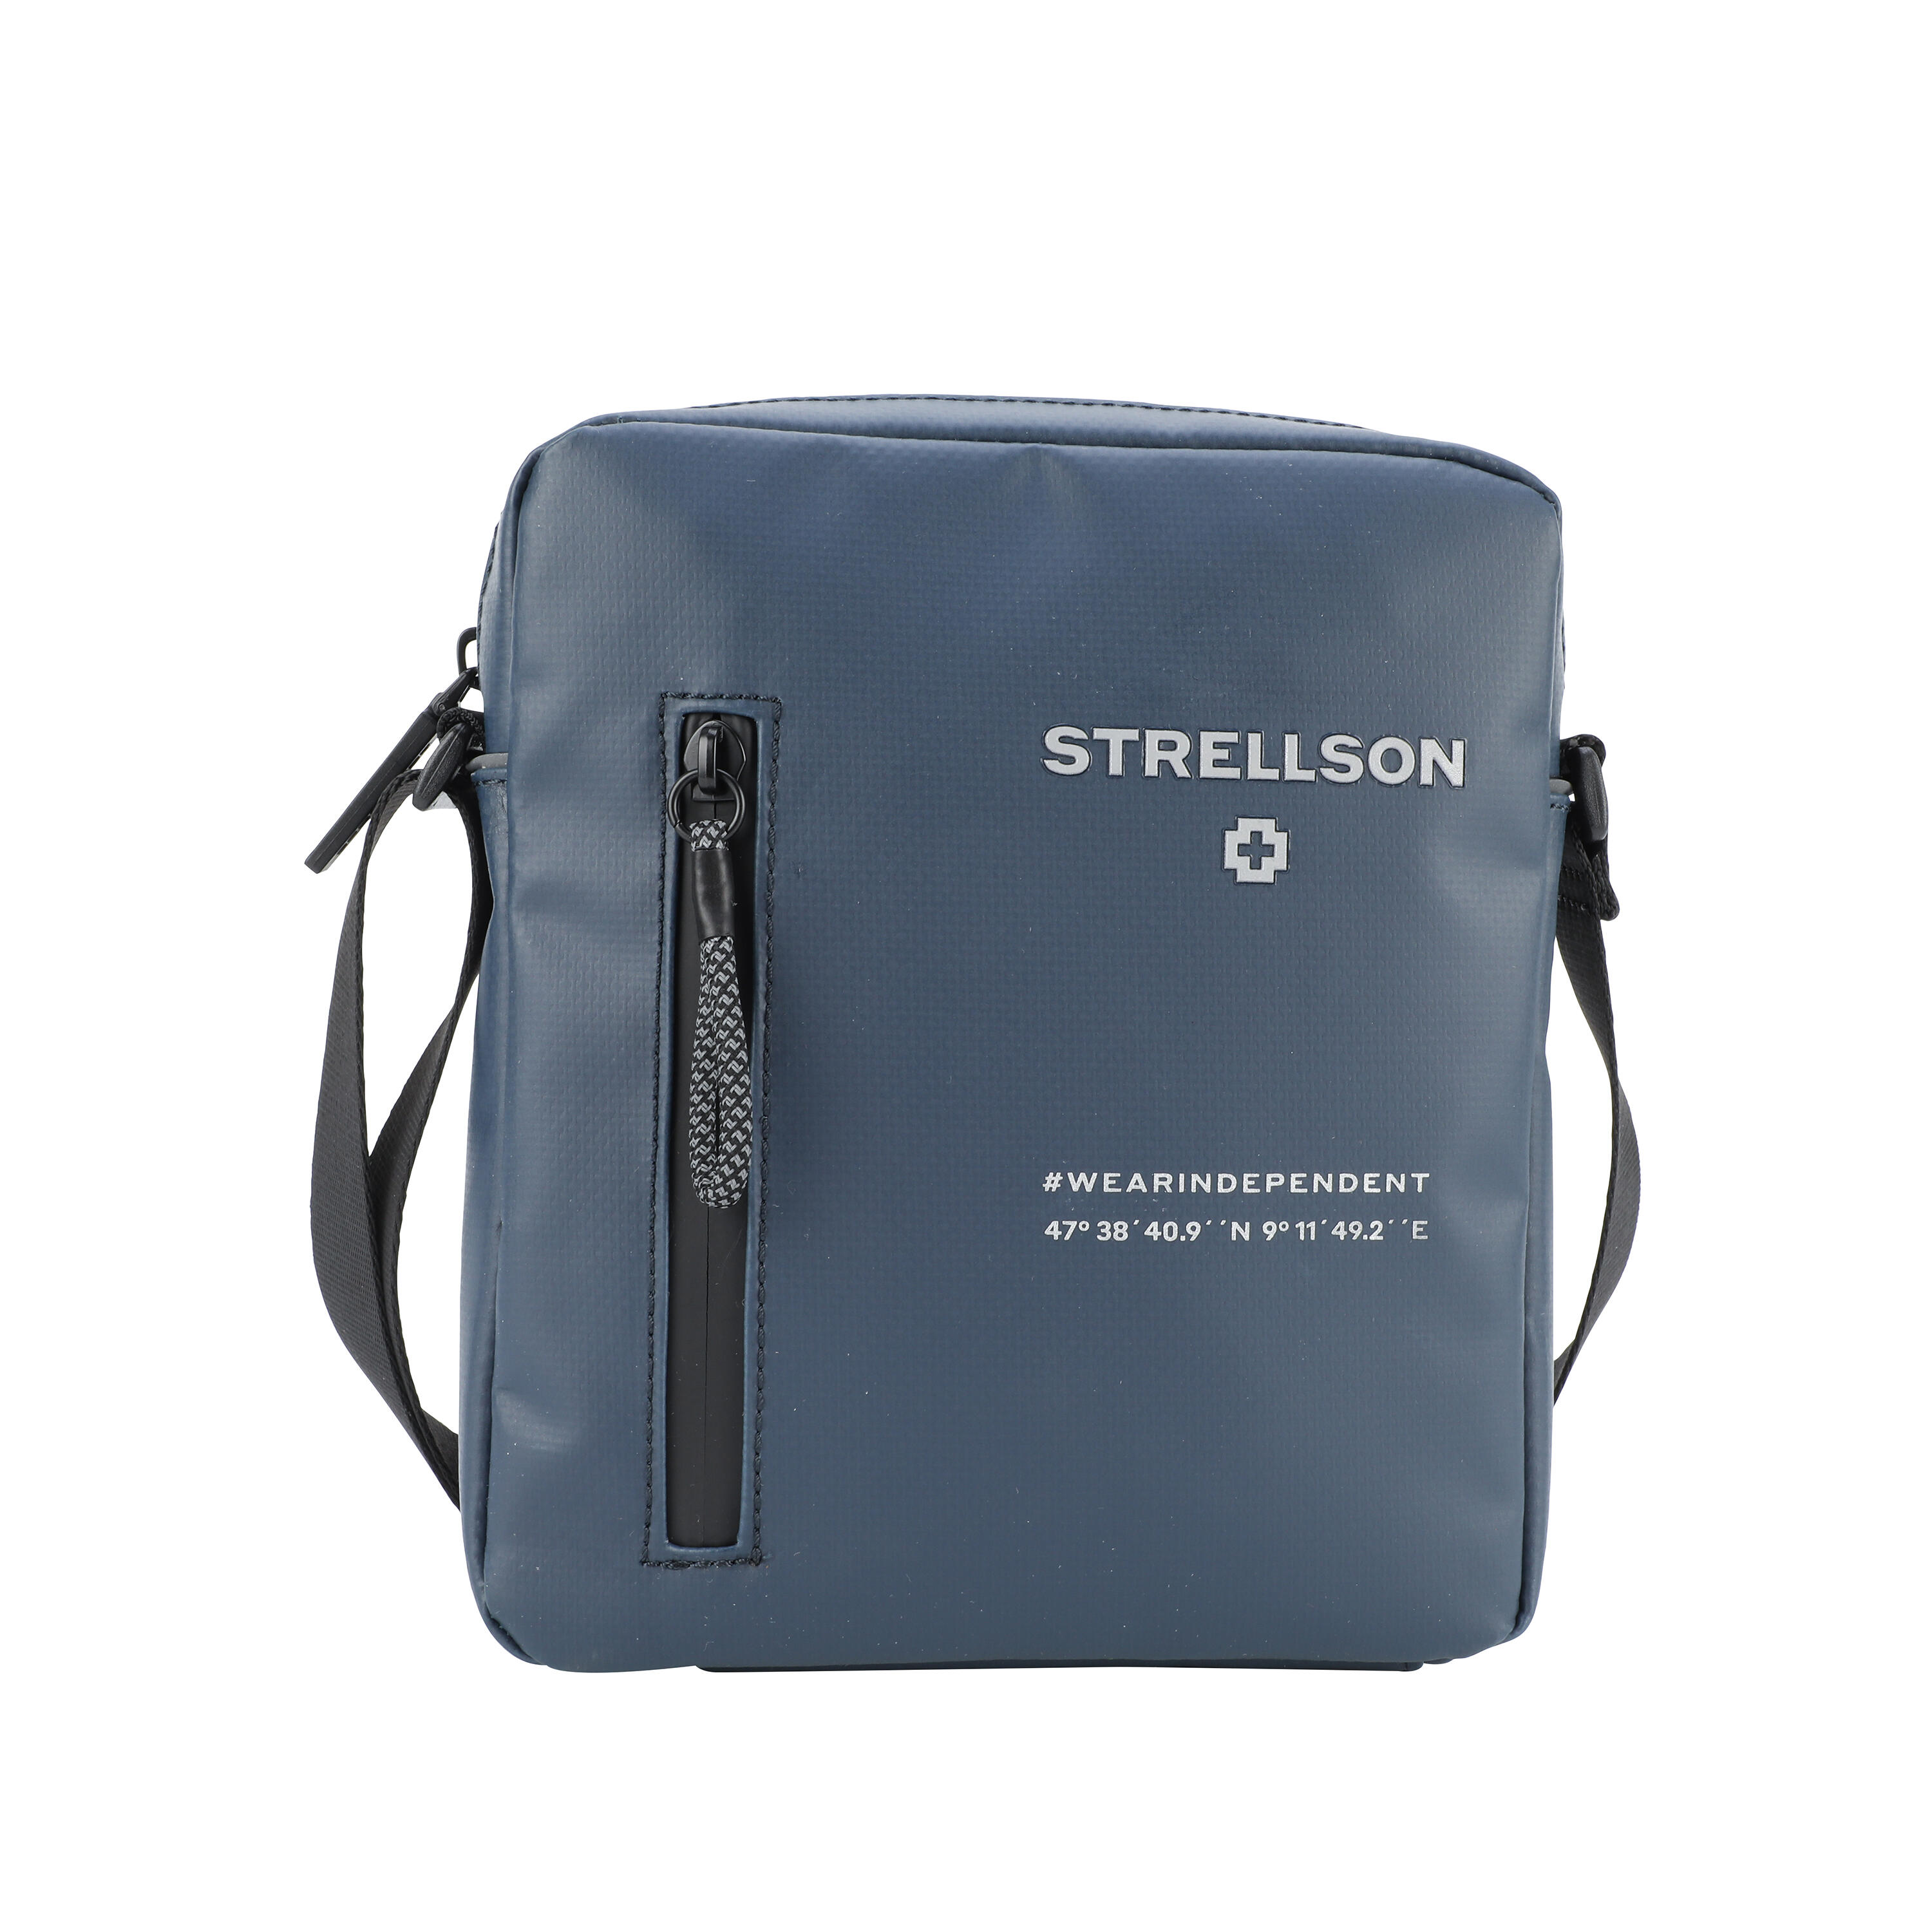 Marcus & Strellson 2.0 goods bags Xsvz Shoulderbag Lederwaren | Küper small leather Stockwell men